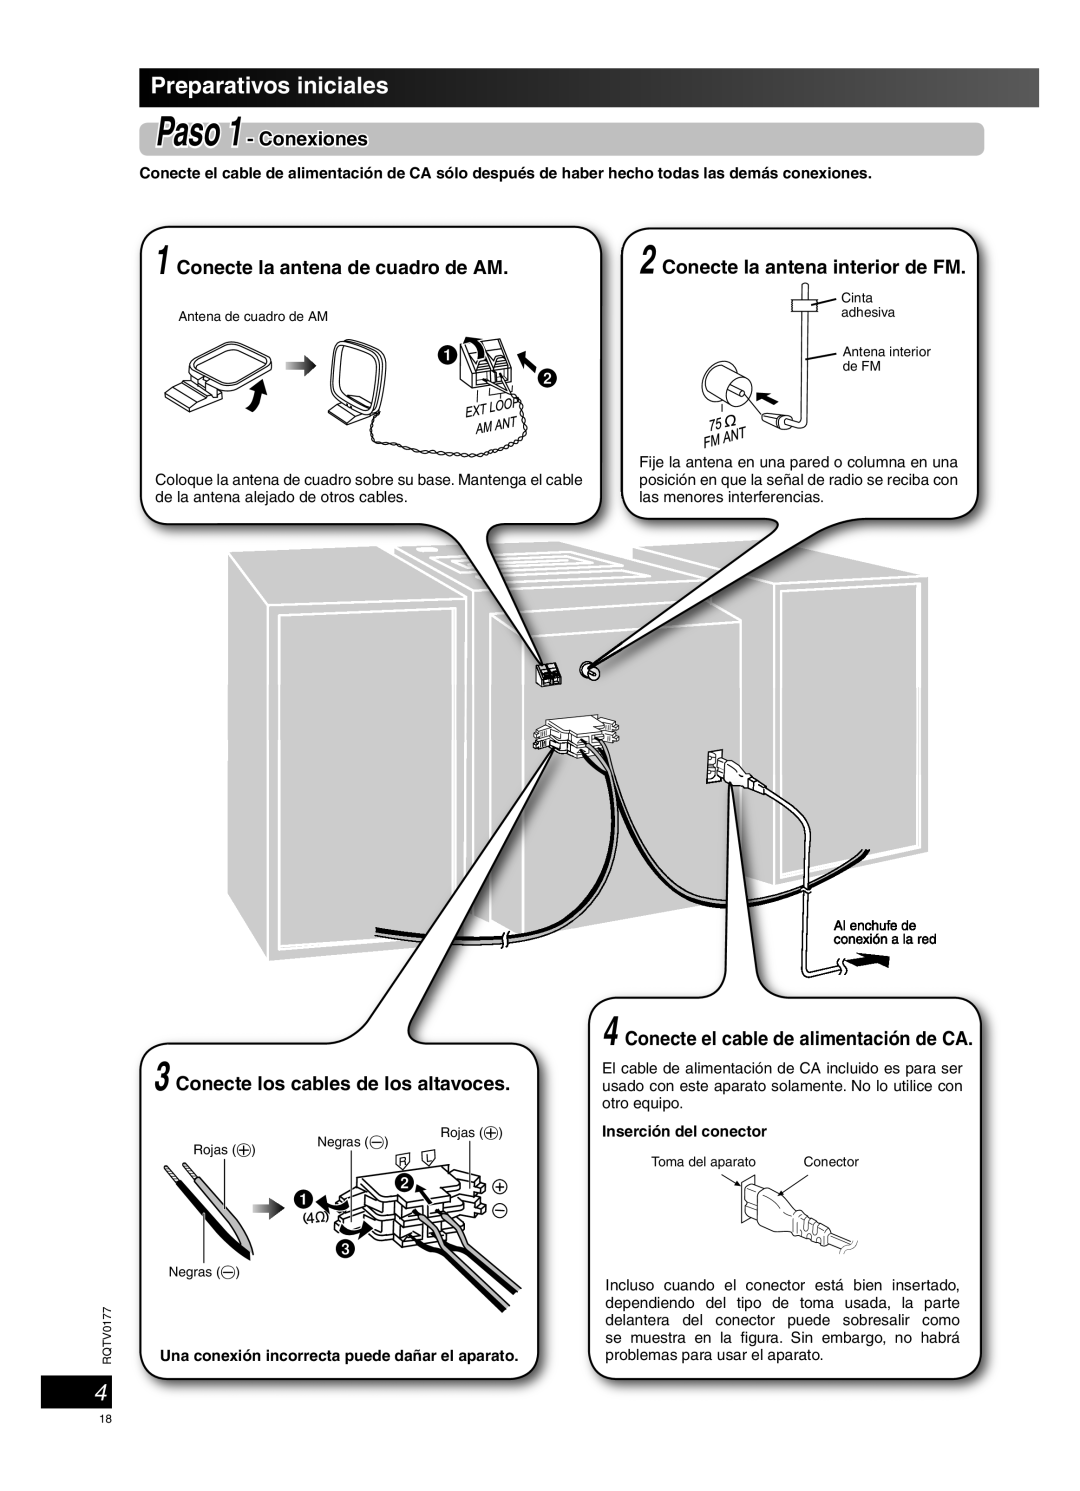 Panasonic SC-PM45 manual Preparativos iniciales, Paso 1 - Conexiones, Conecte los cables de los altavoces 